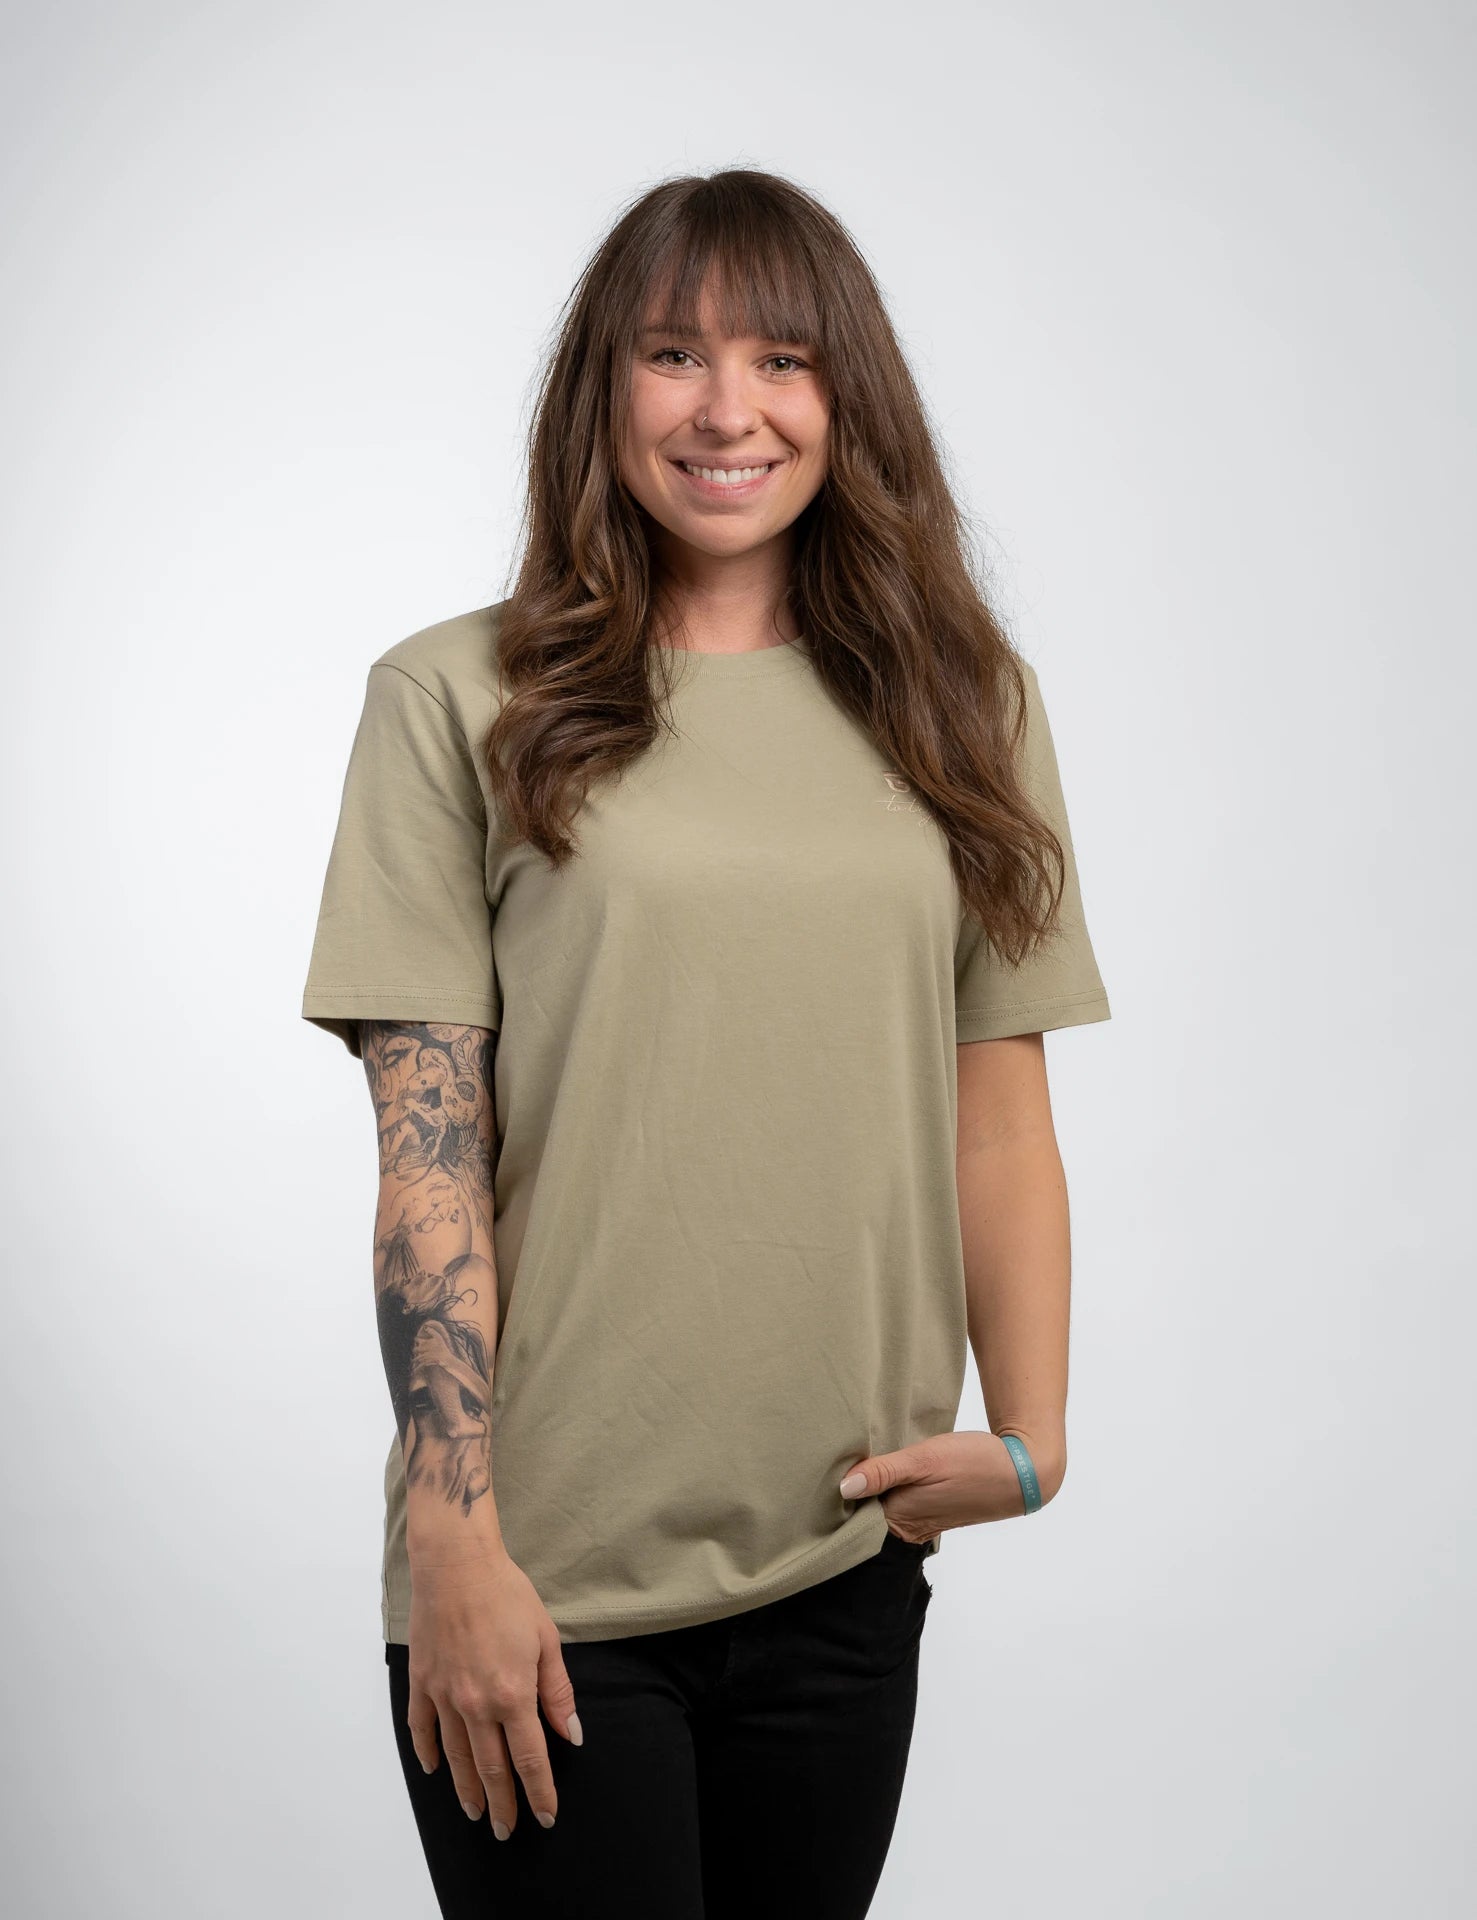 Lightgreen classic Bio-Baumwolle T-Shirt mit beigen, 1d totry Stick auf der Brust.